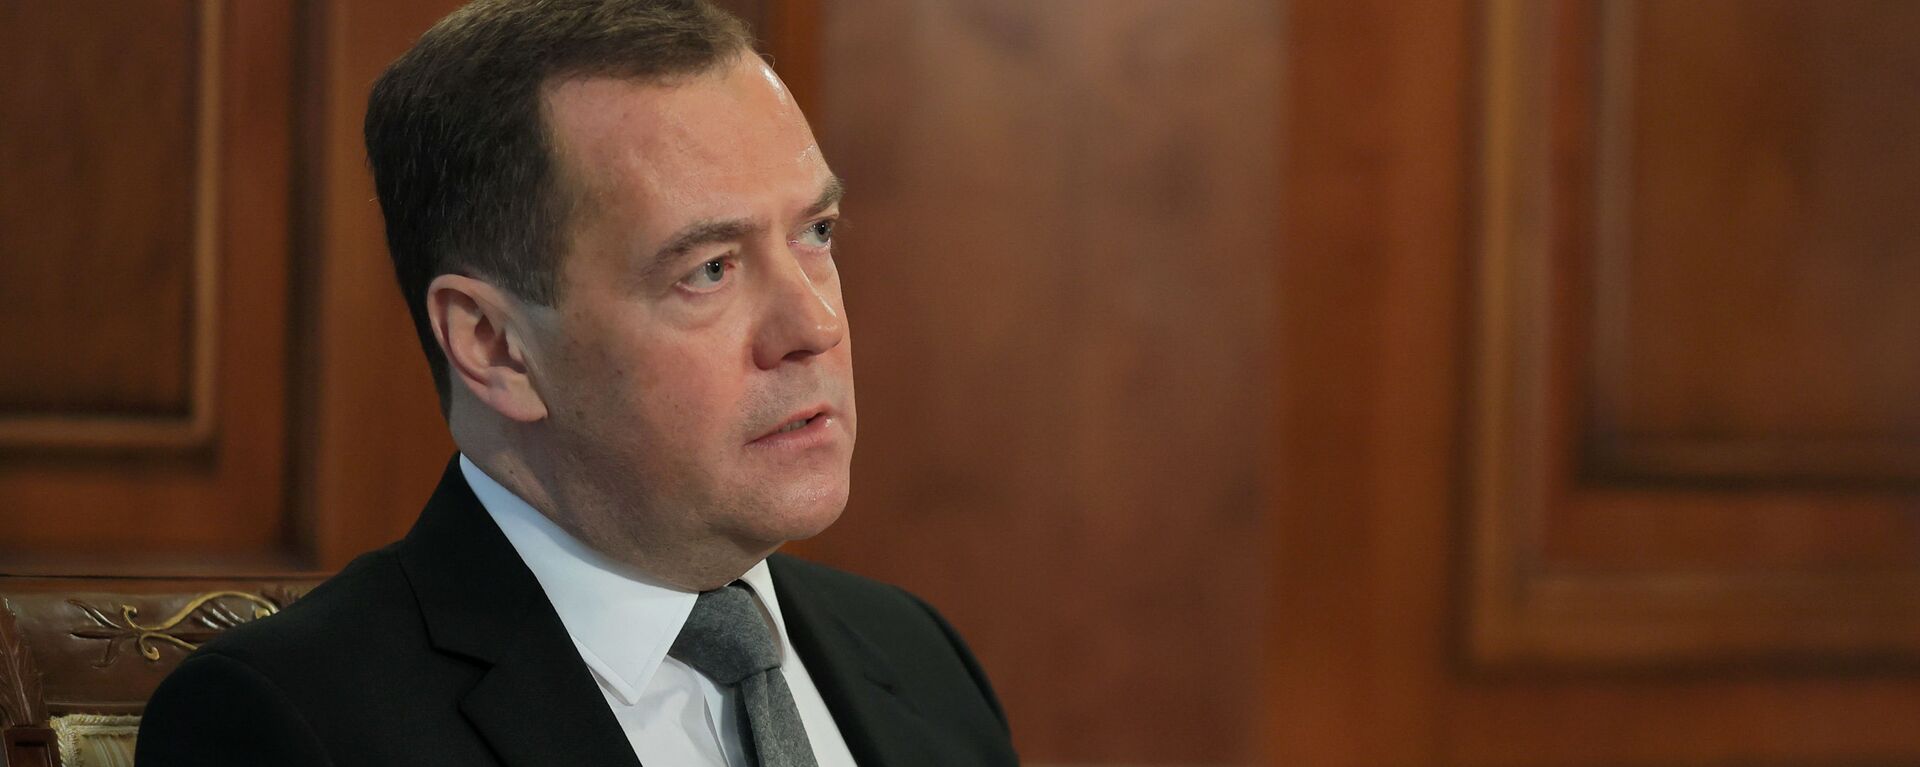 Заместитель председателя Совбеза РФ Д. Медведев дал интервью российским СМИ - Sputnik Абхазия, 1920, 13.05.2022